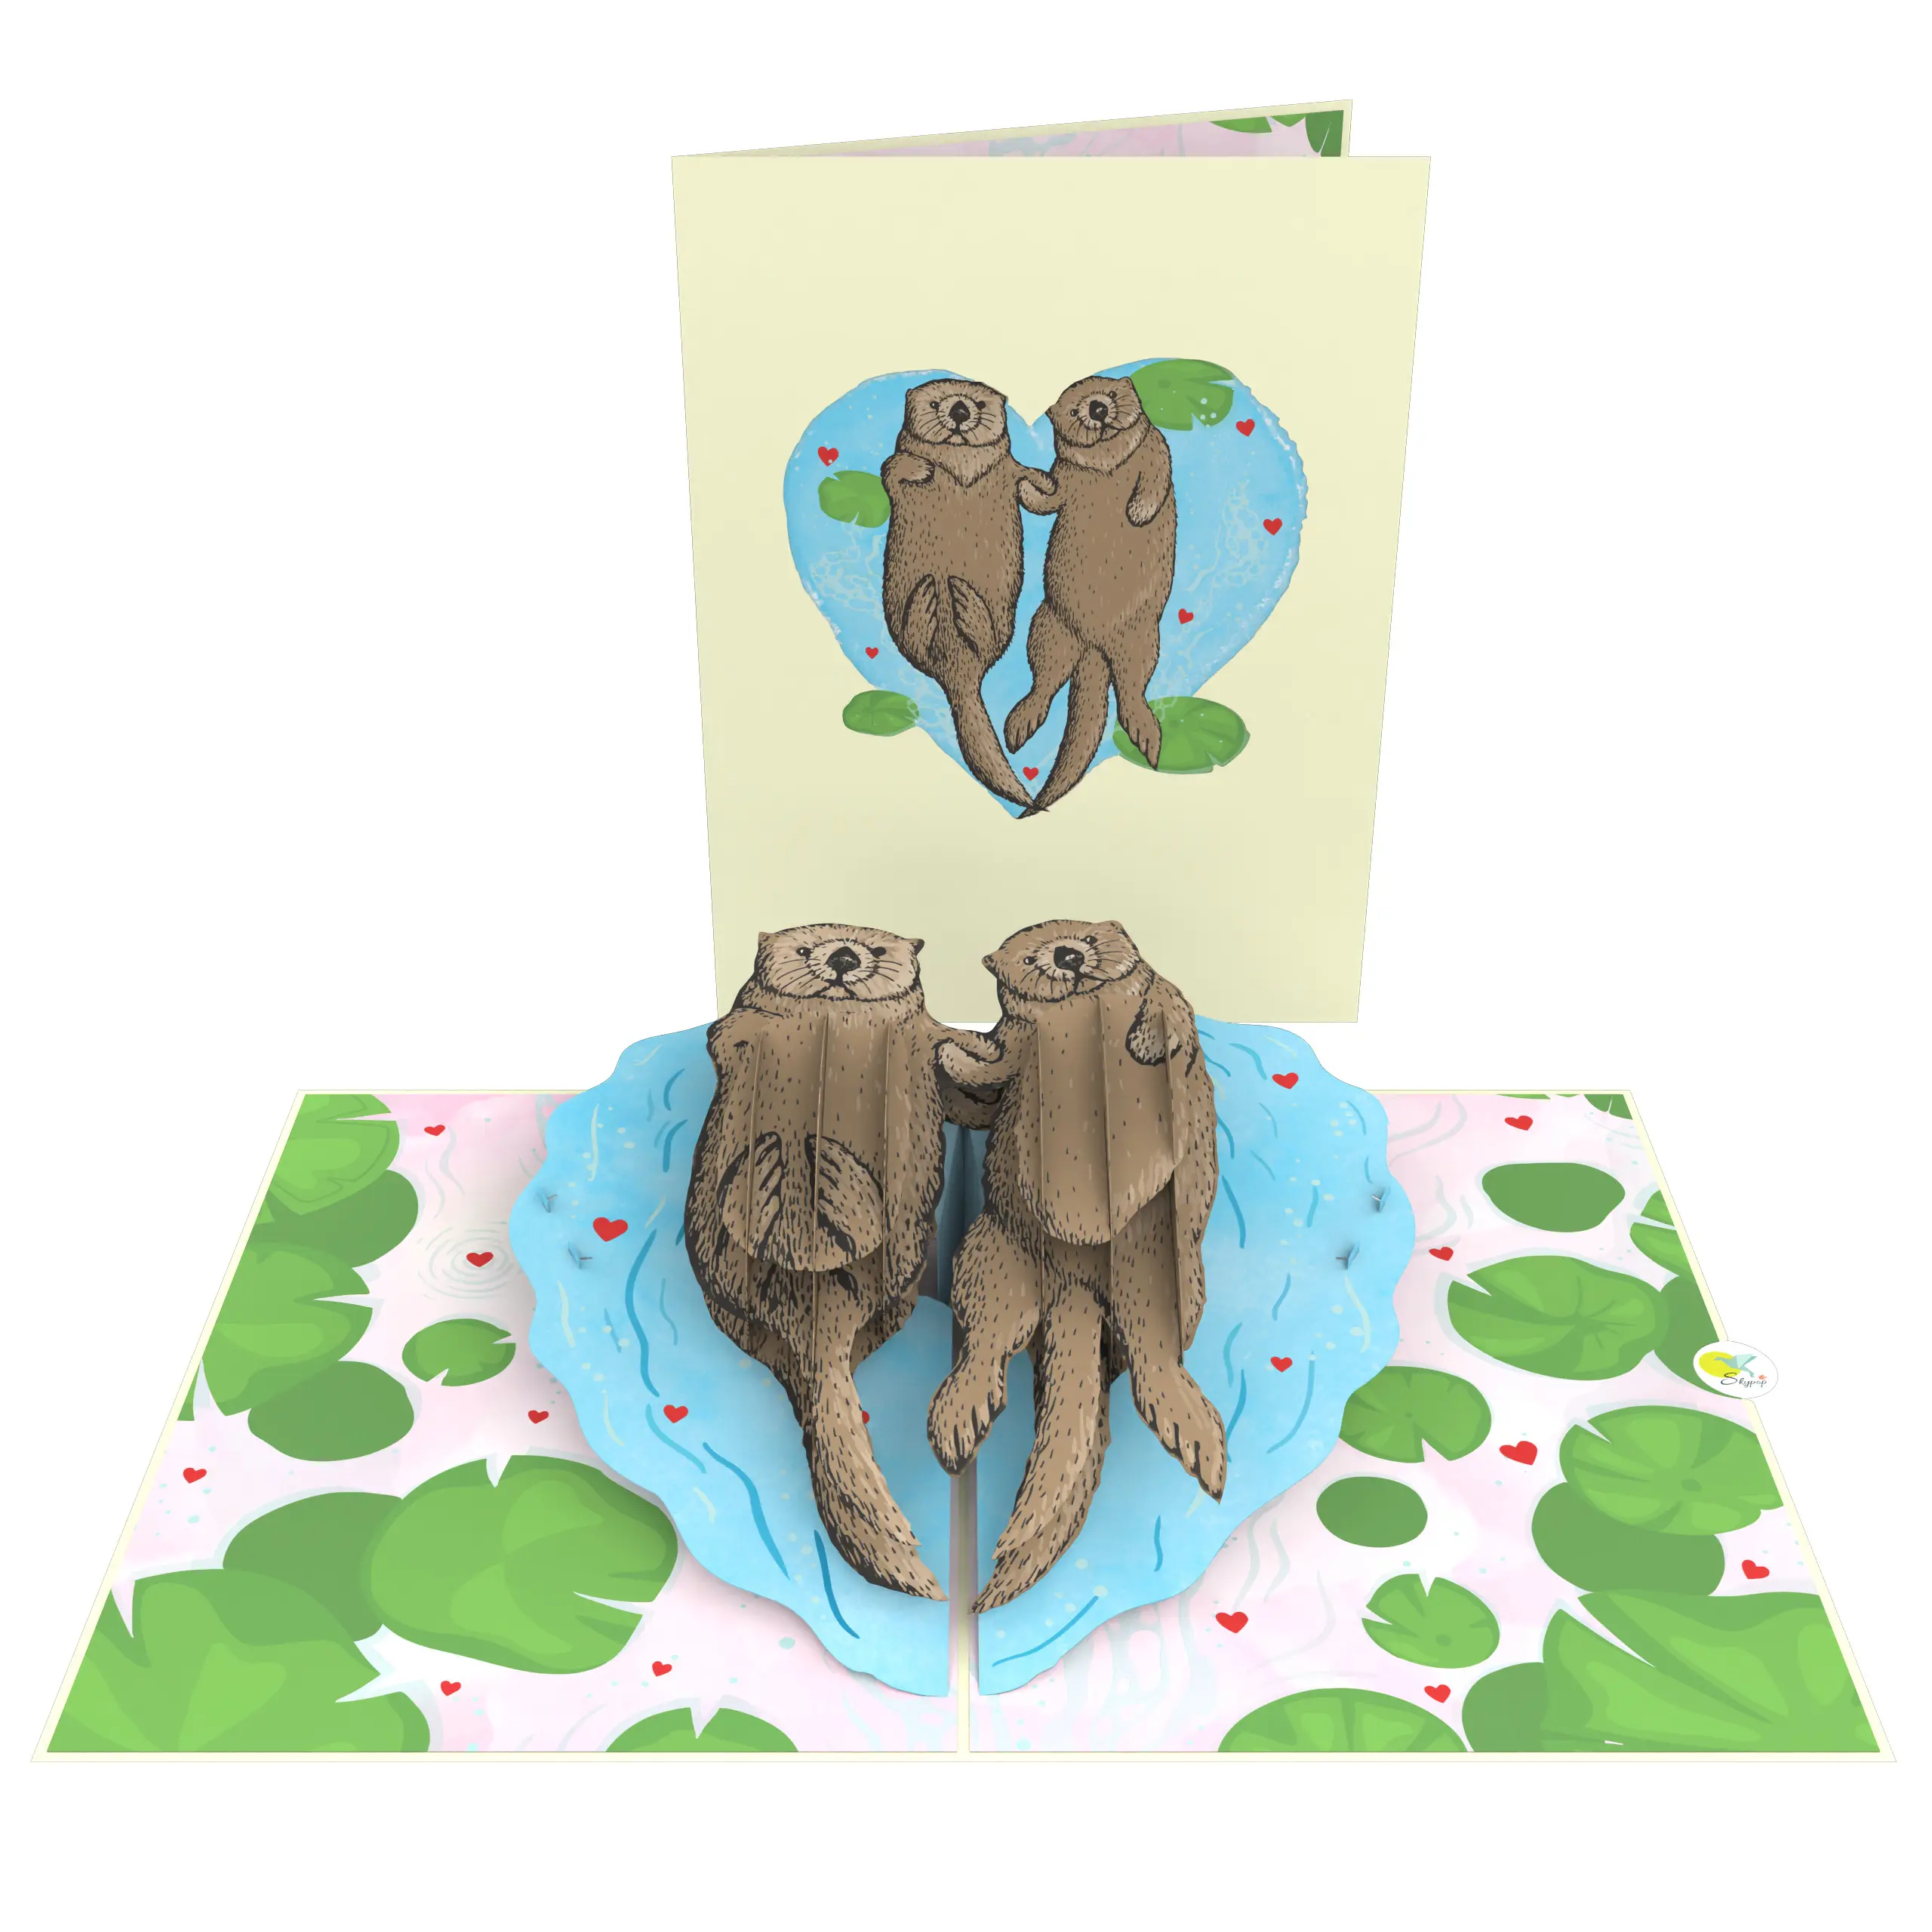 Happy Otters Pop Up Card eco-friendly migliore qualità compleanno san valentino anniversario matrimonio divertente carta sporca 3D Pop Up Card